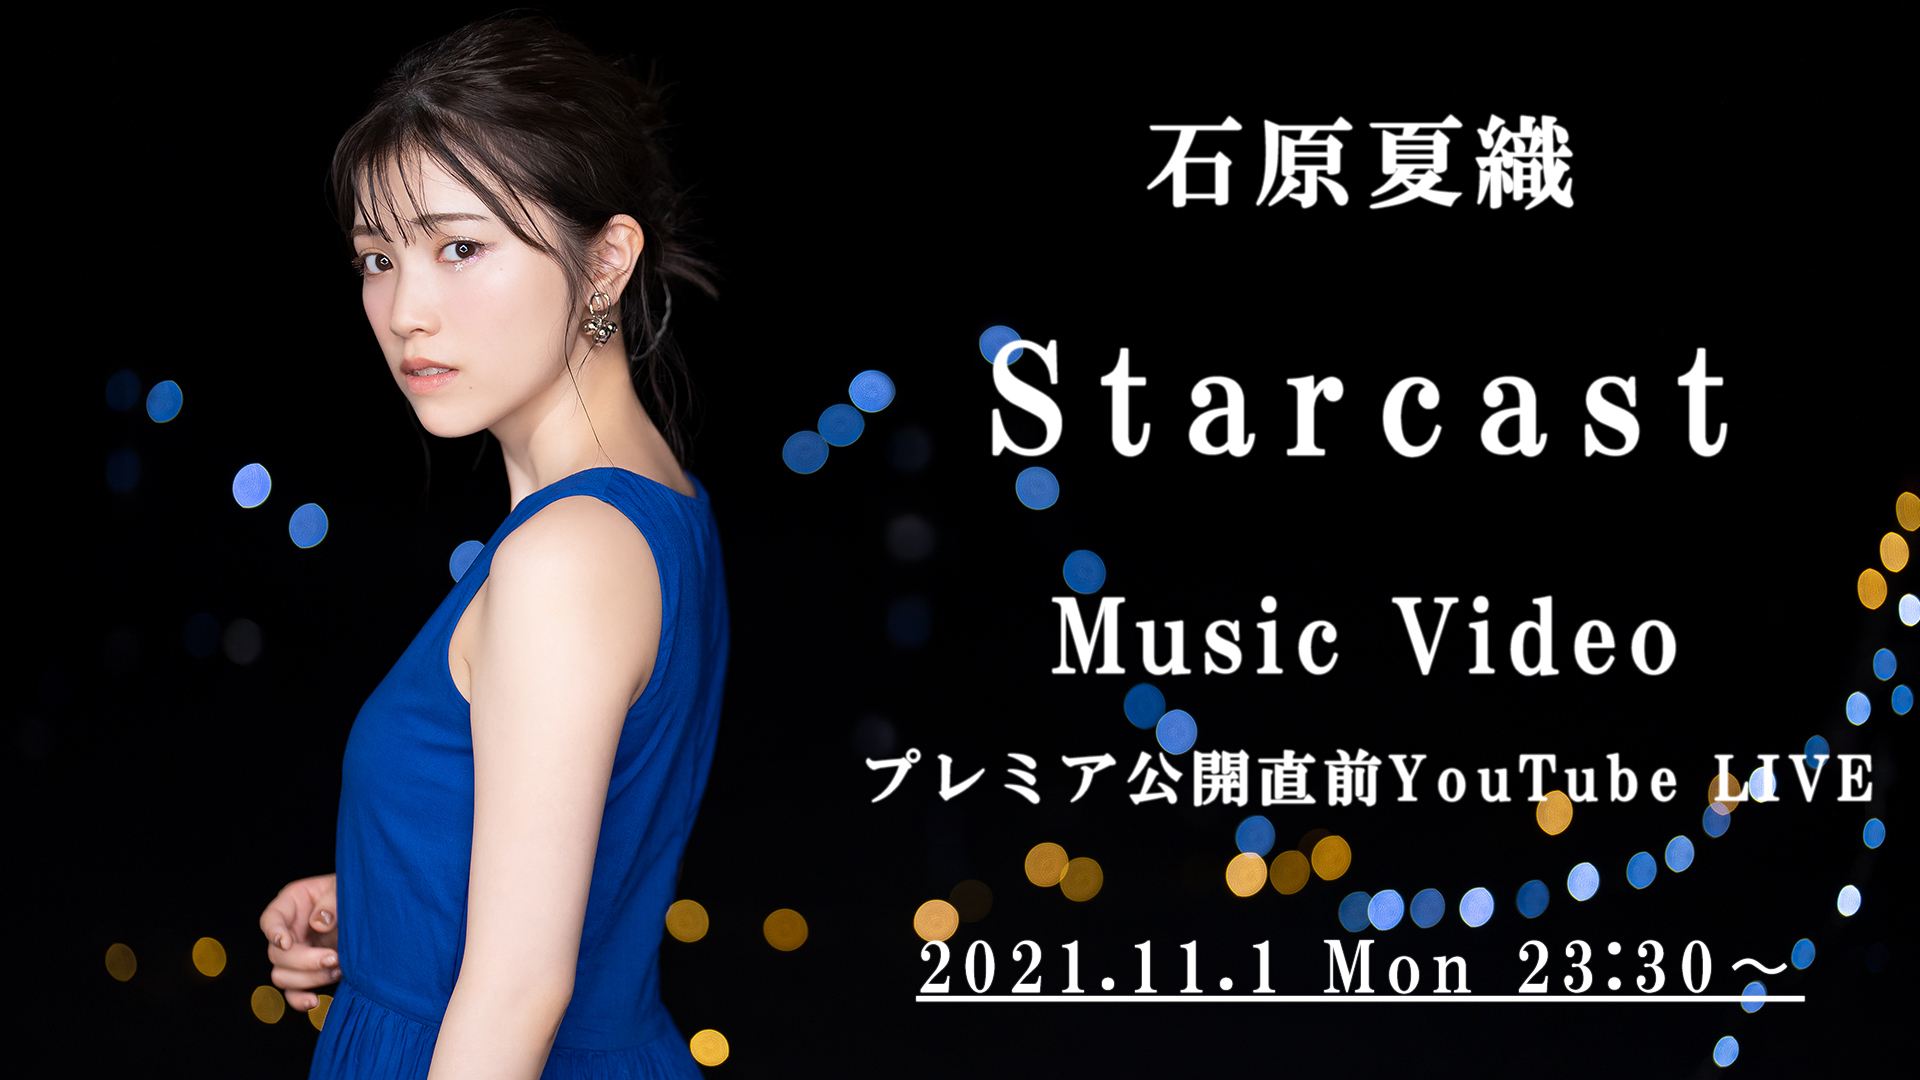 石原夏織「Starcast」プレミア公開直前 YouTube LIVE